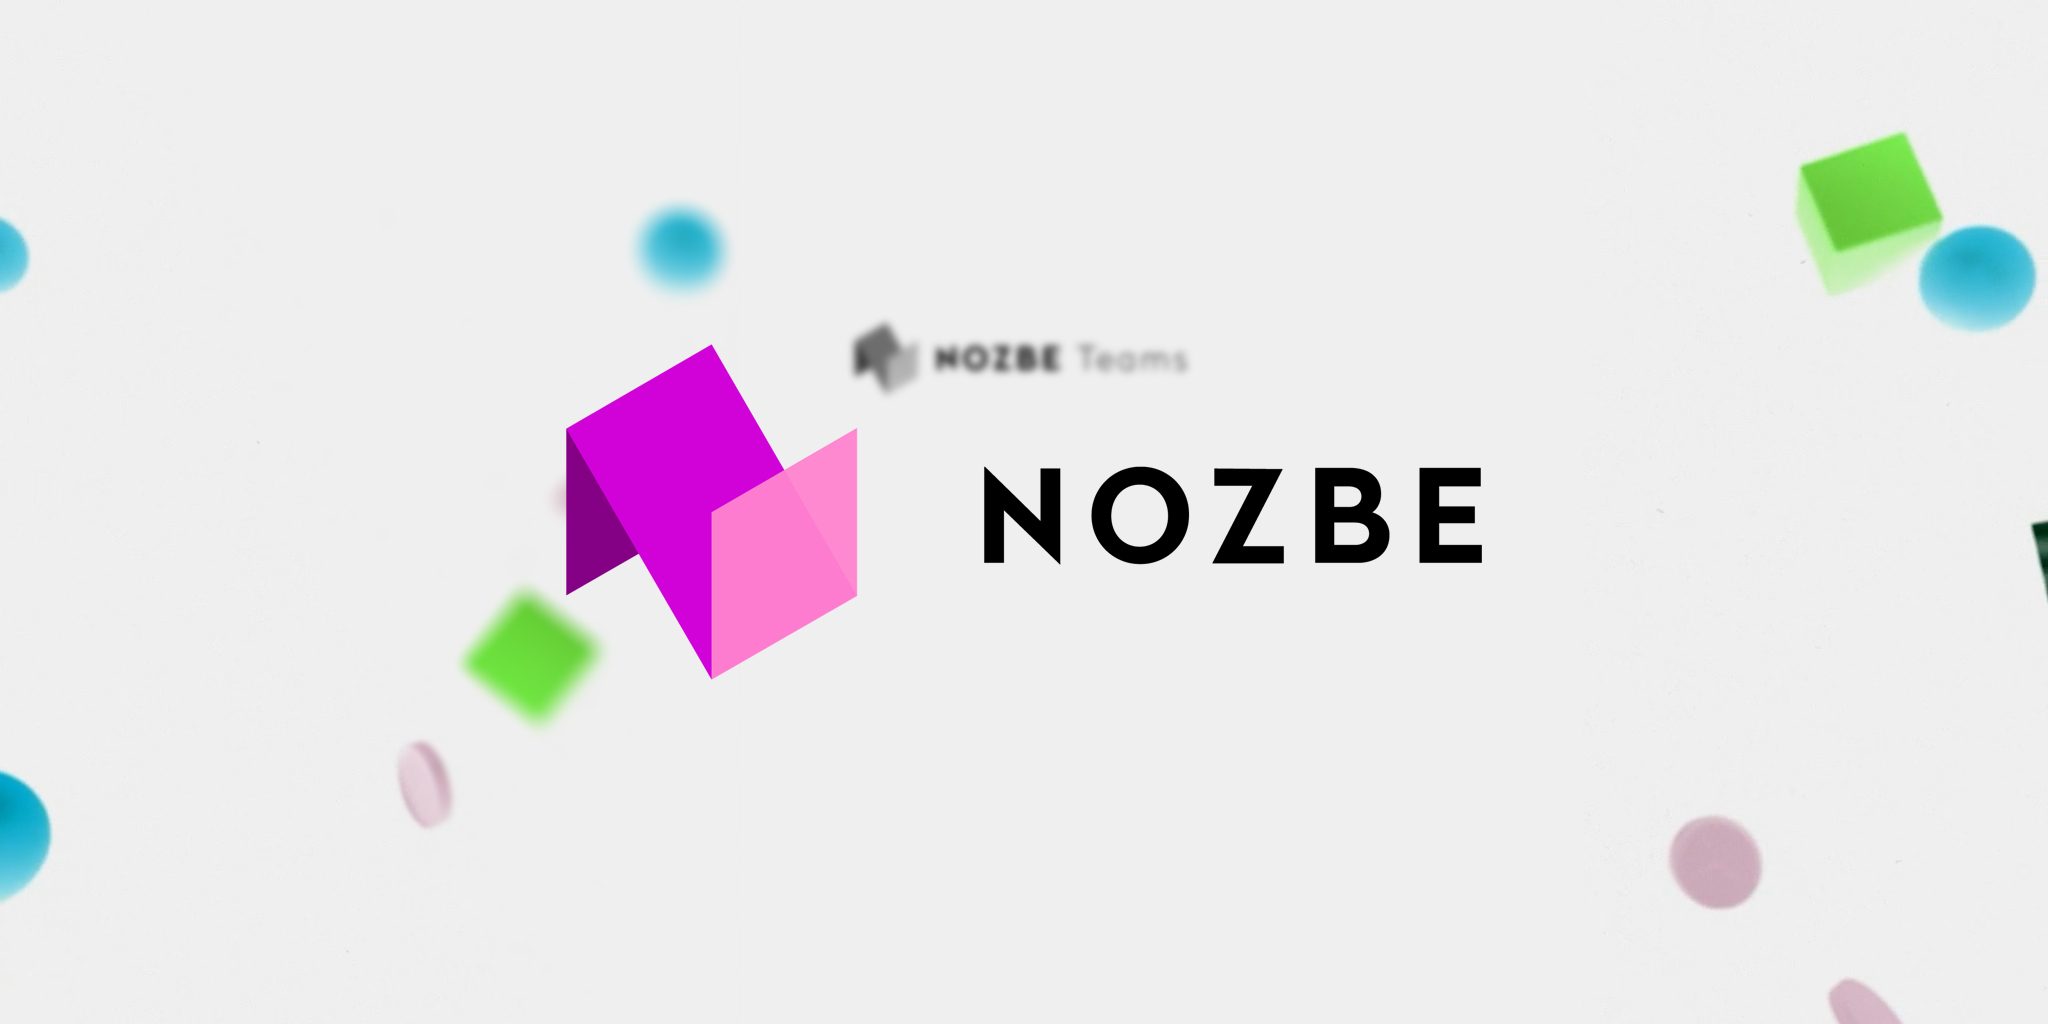 Nozbe is the new version of Nozbe